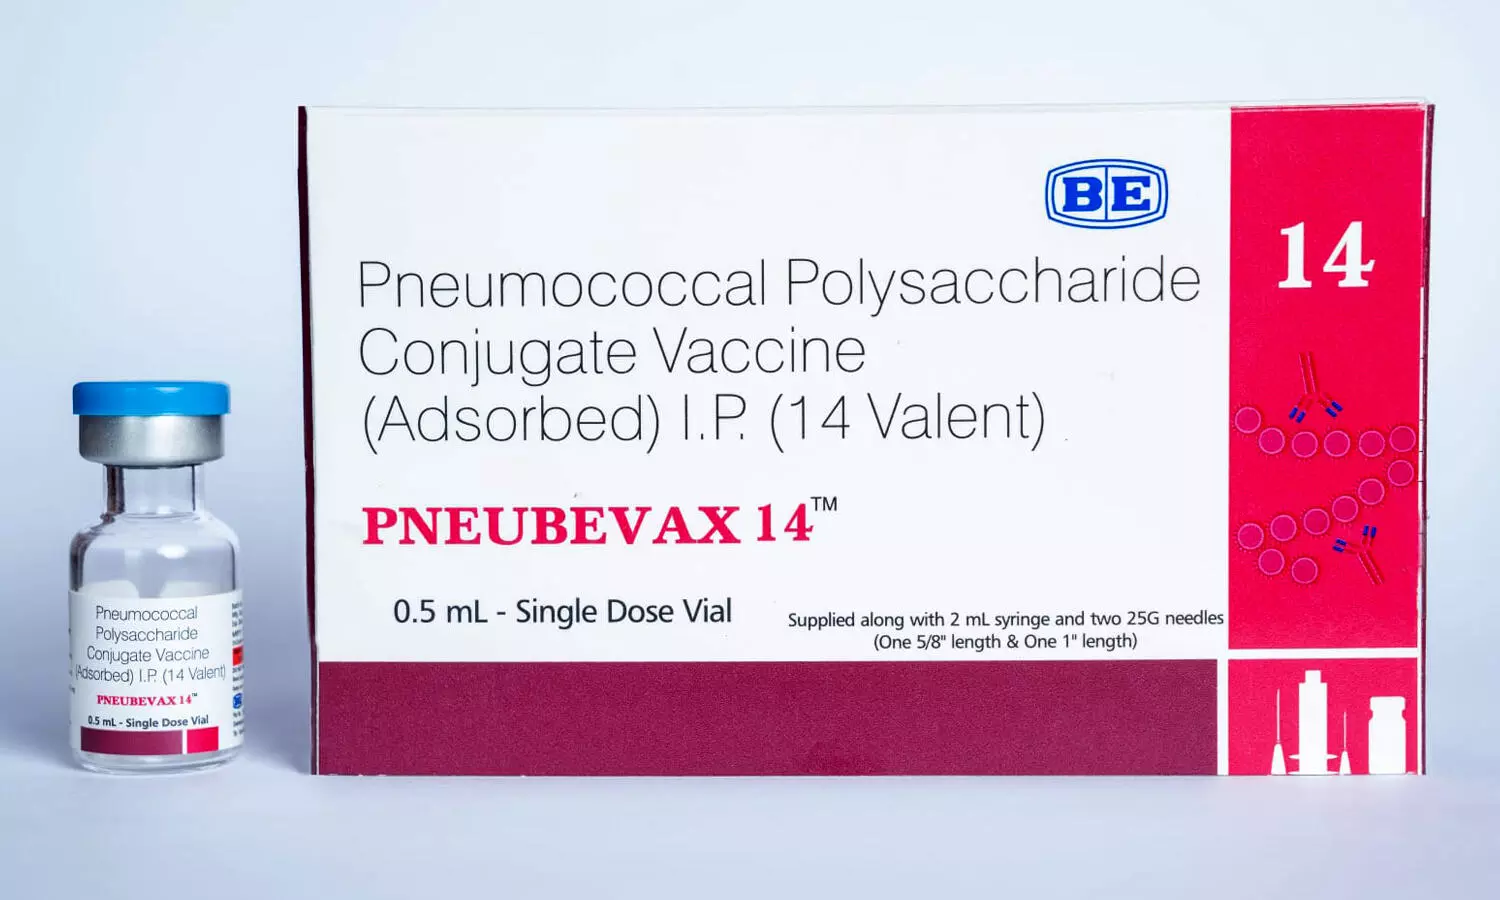 Biological E. Limited PNEUBEVAX 14TM safe, immunogenic in 6-8 week old infants